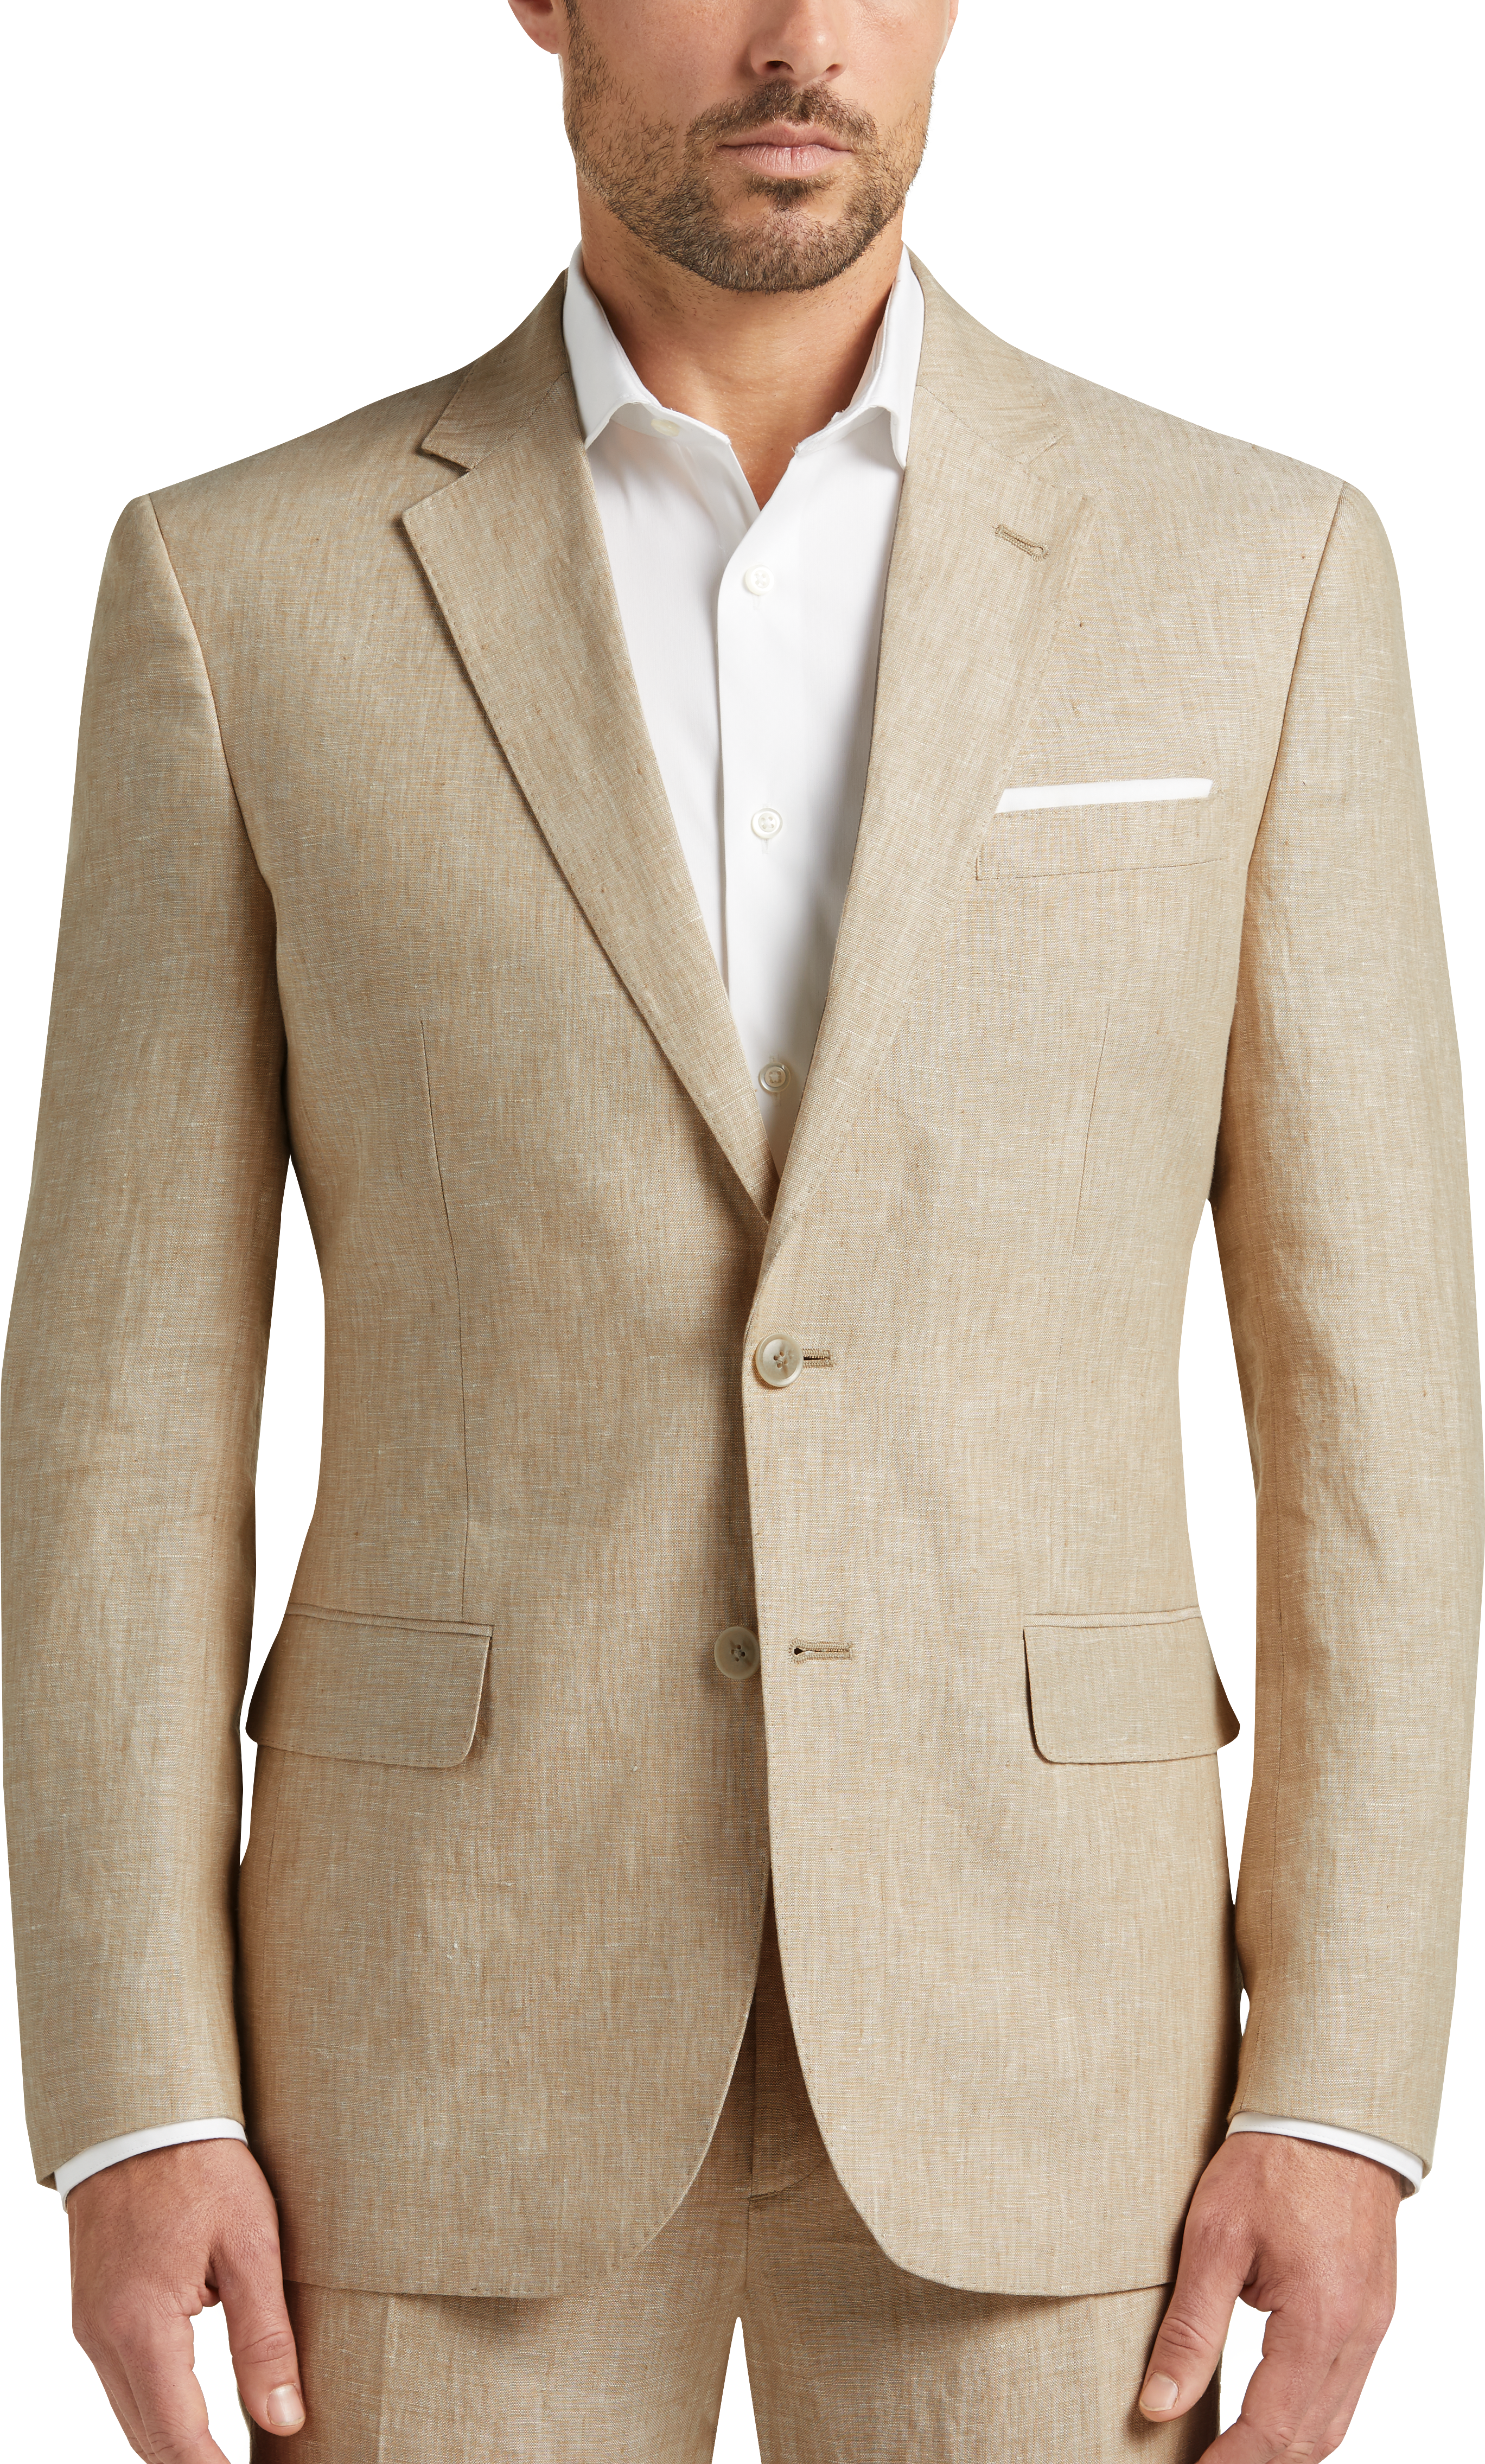 JOE Joseph Abboud Linen Slim Fit Suit Separates, Tan